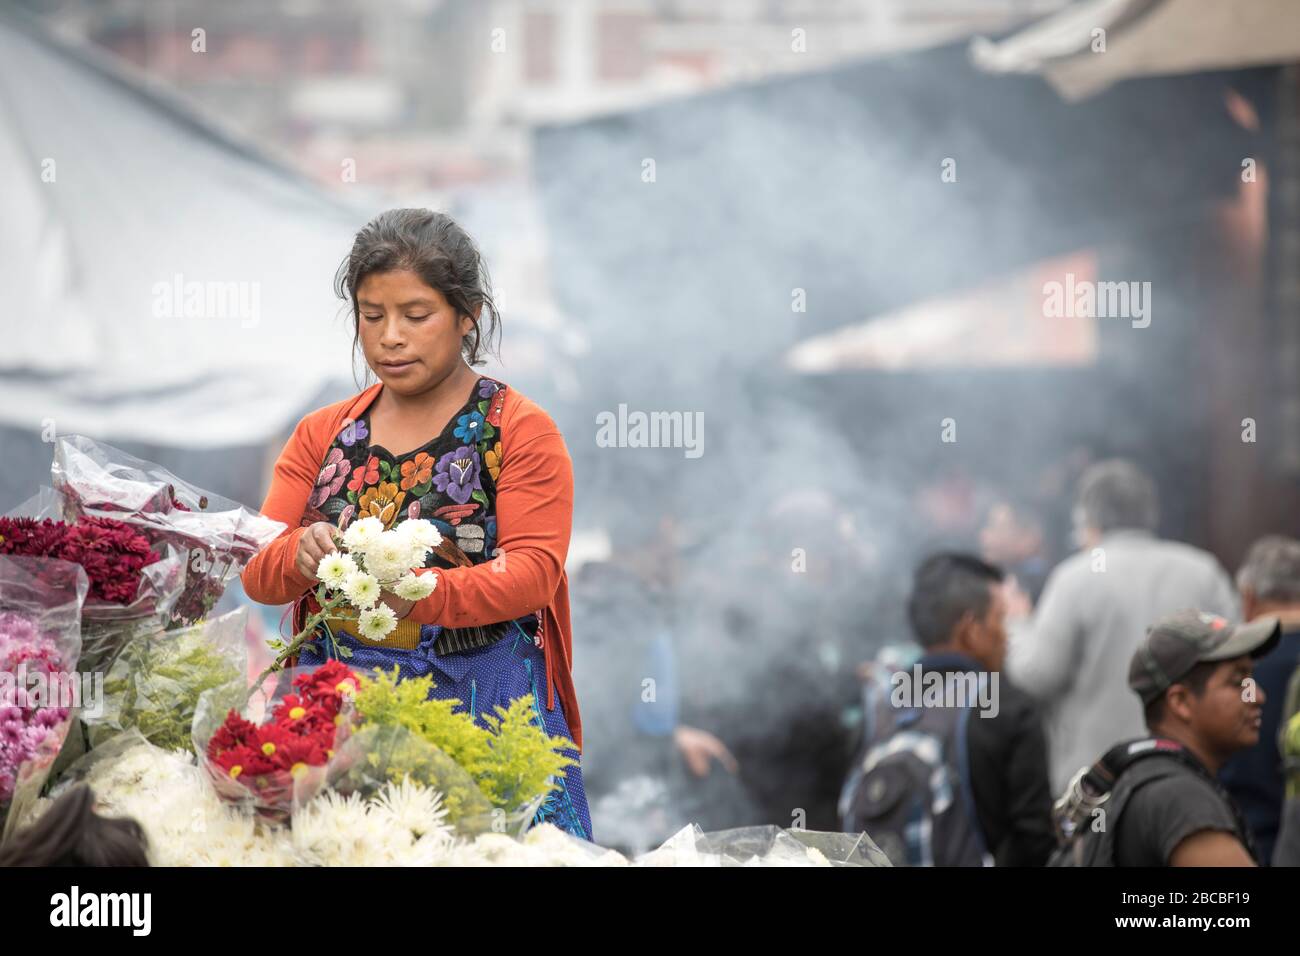 chichicastenango, Guatemala, 27th February 2020: mayan woman selling flowers at a market Stock Photo